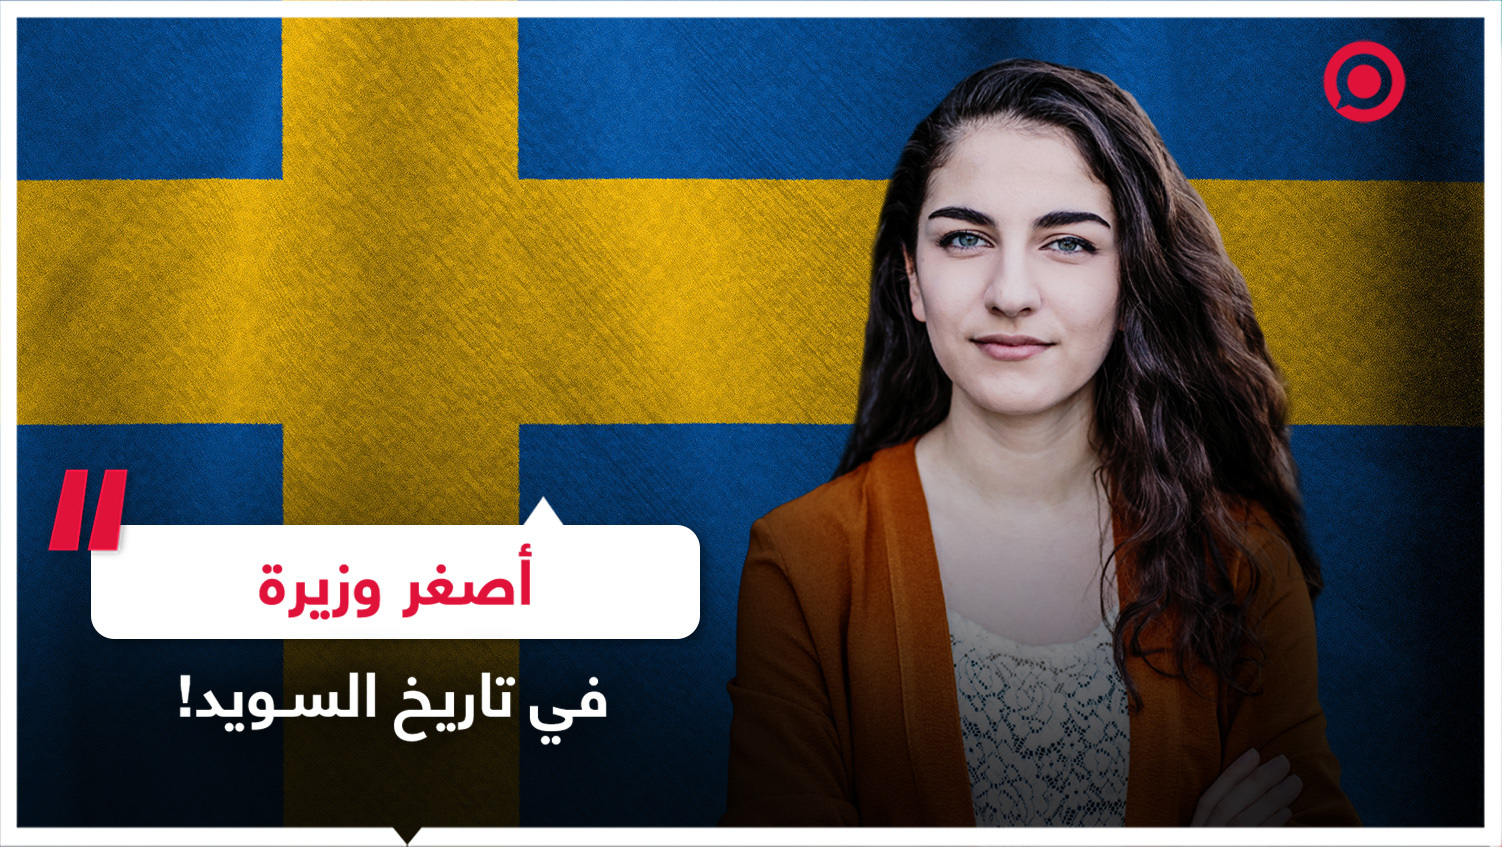 أصغر وزيرة في تاريخ السويد!